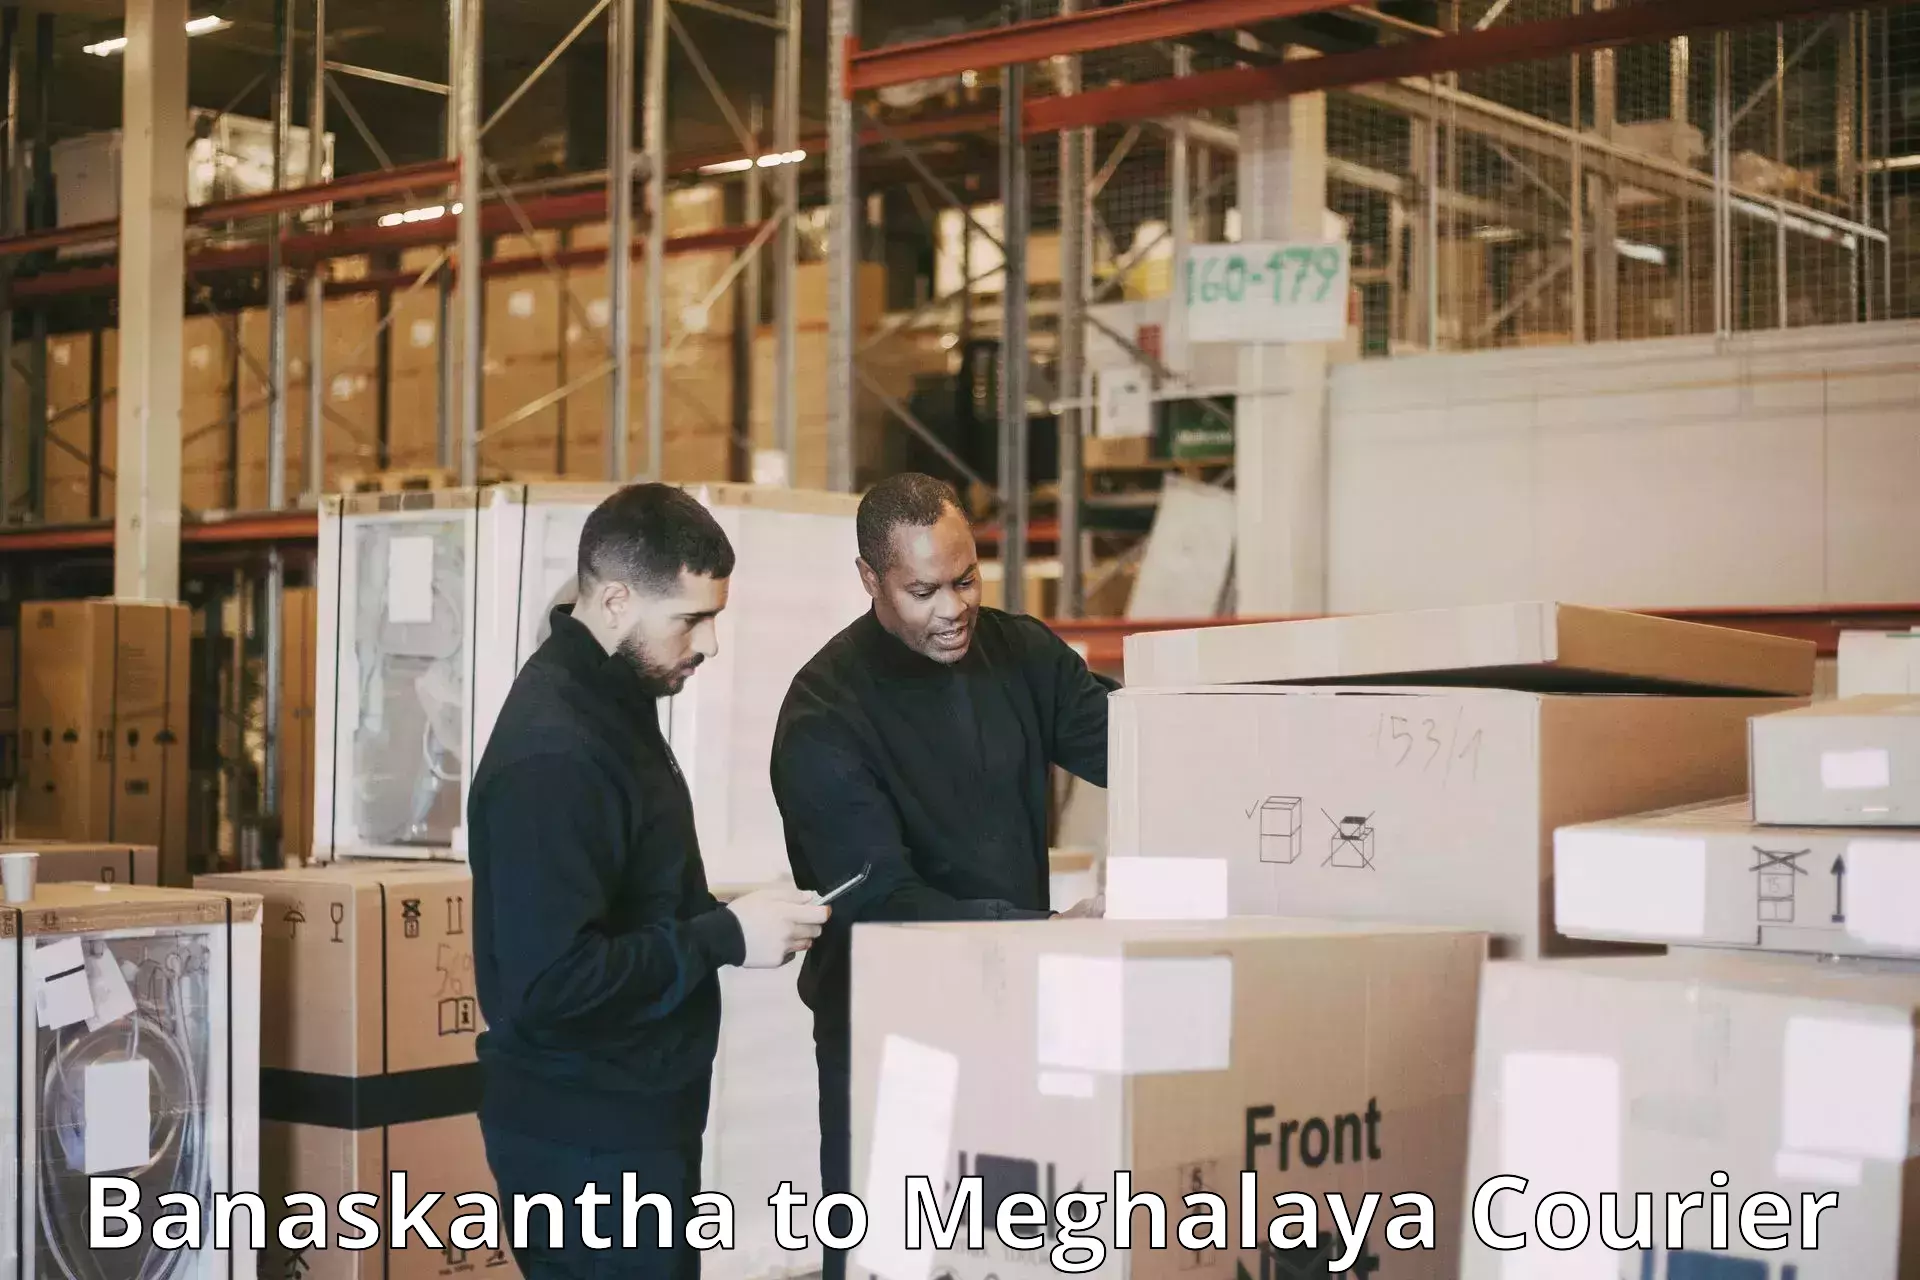 Customer-centric shipping Banaskantha to Meghalaya